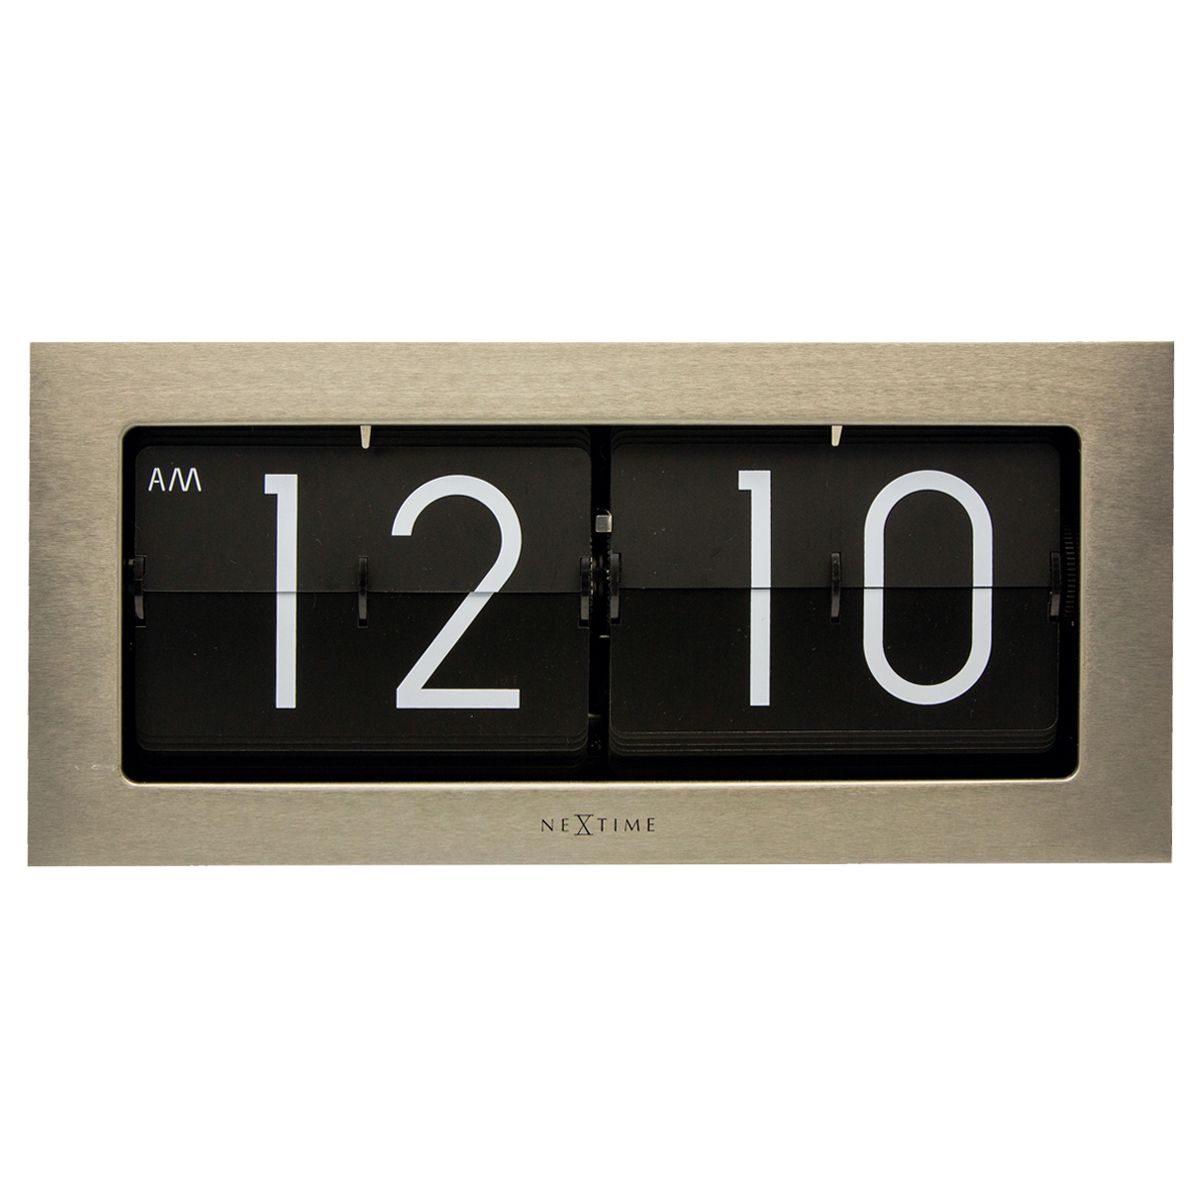 Boyle NeXtime Big Flip Clock 36cm wide Large Clear Number Modern Look | eBay